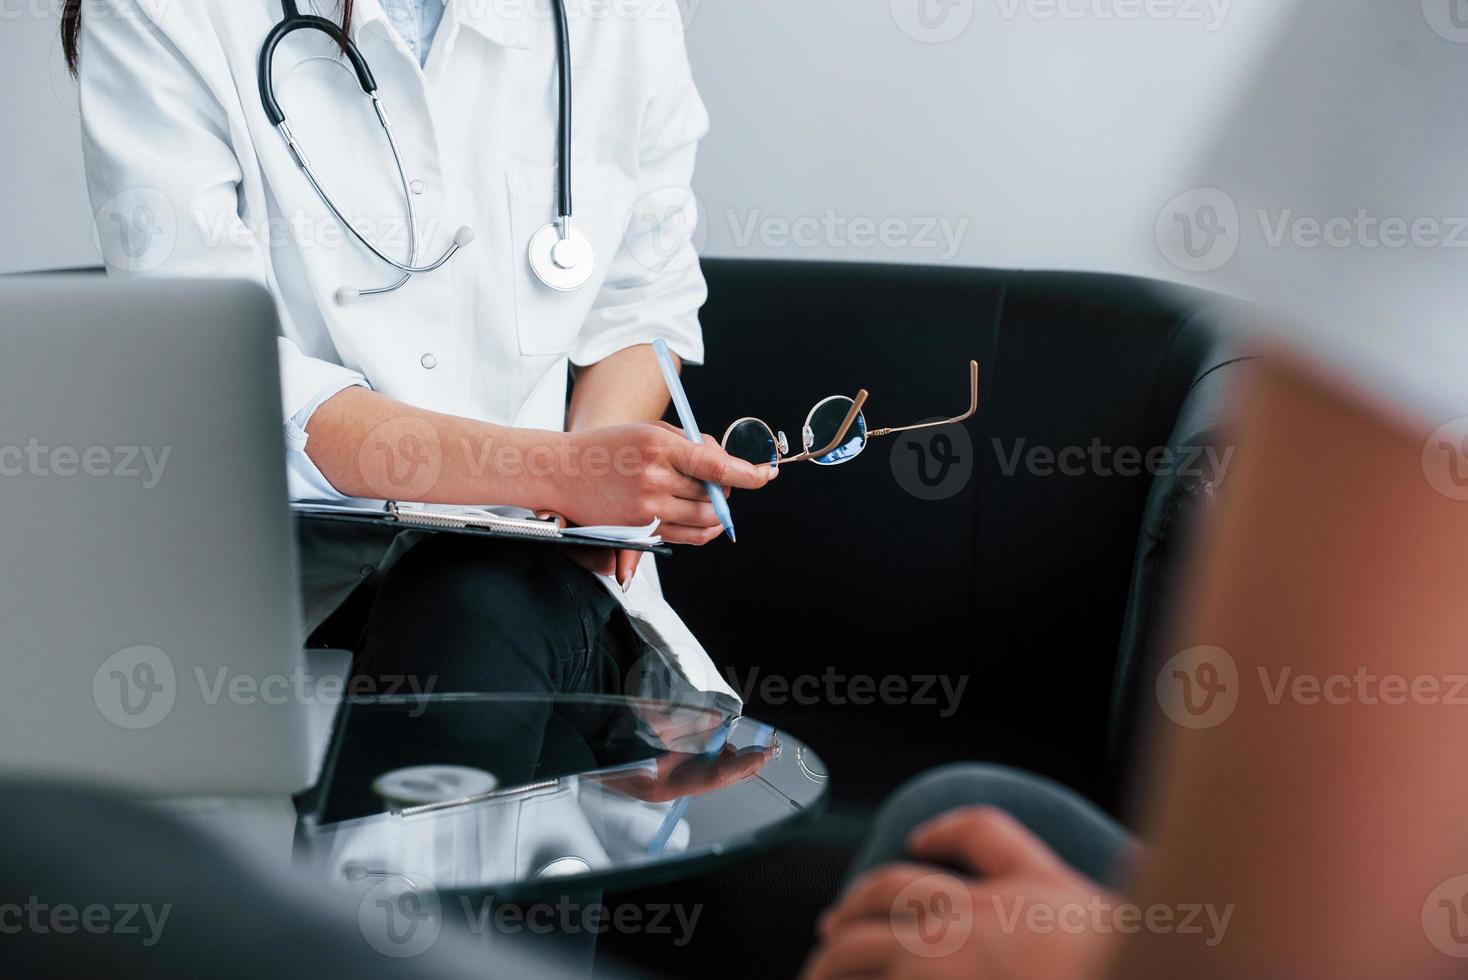 jovem tem uma visita com médica na clínica moderna foto